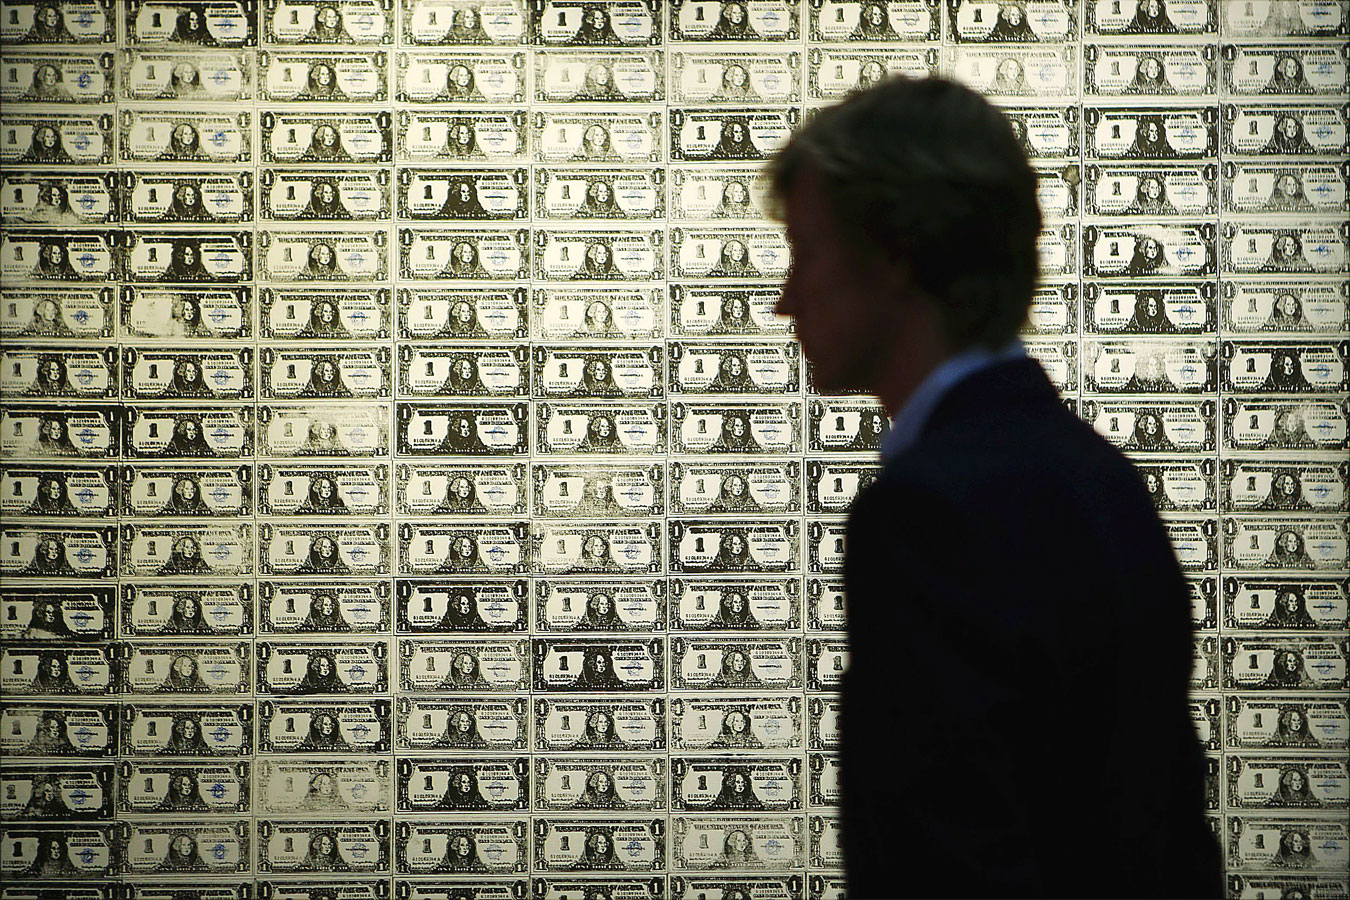 192 one dollar bills (1962, Andy Warhol)